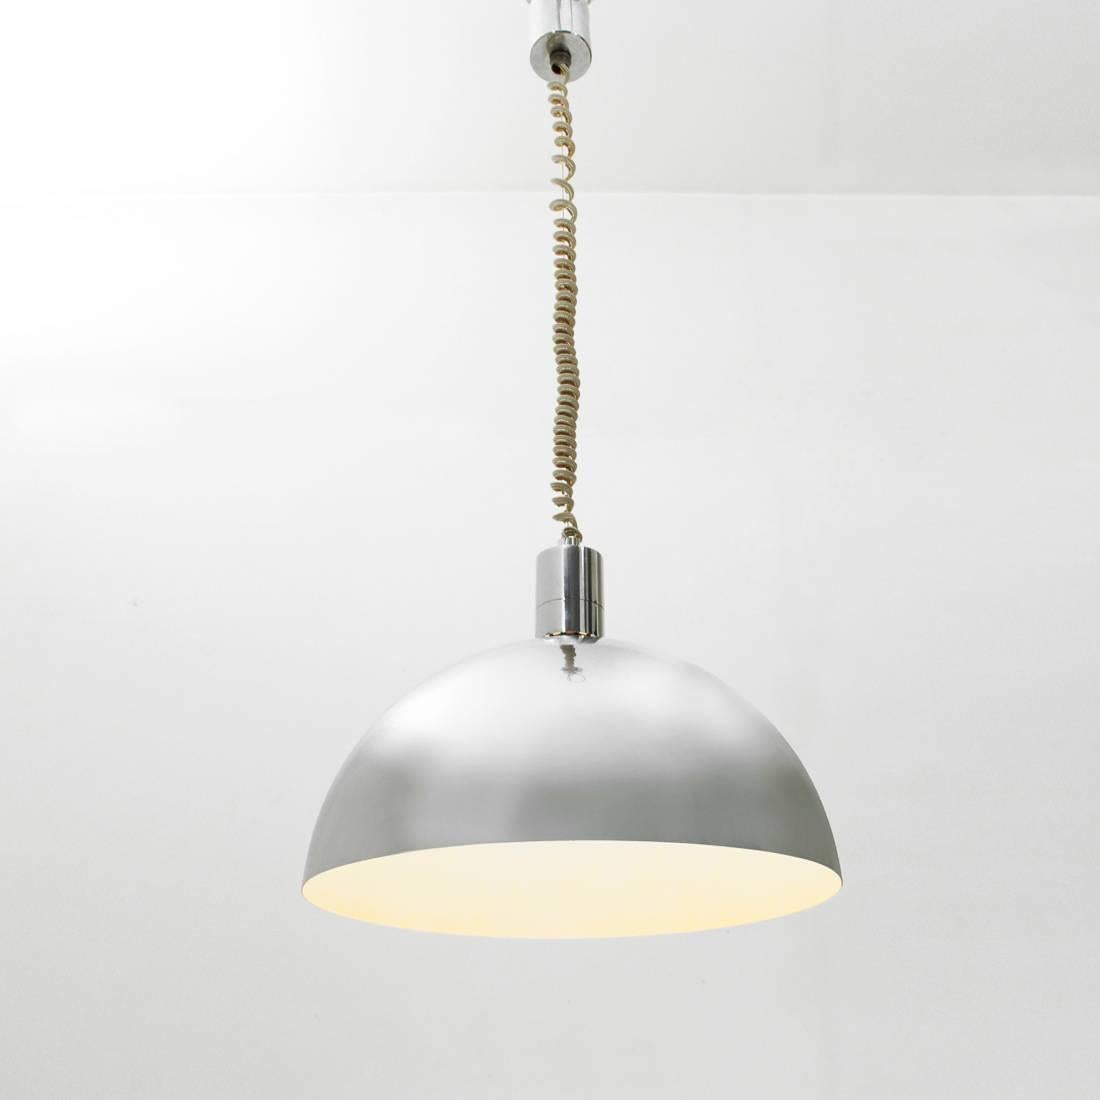 Mid-Century Modern Chromed Pendant Lamp Model AM-AS, Franco Albini for Sirrah, 1960s